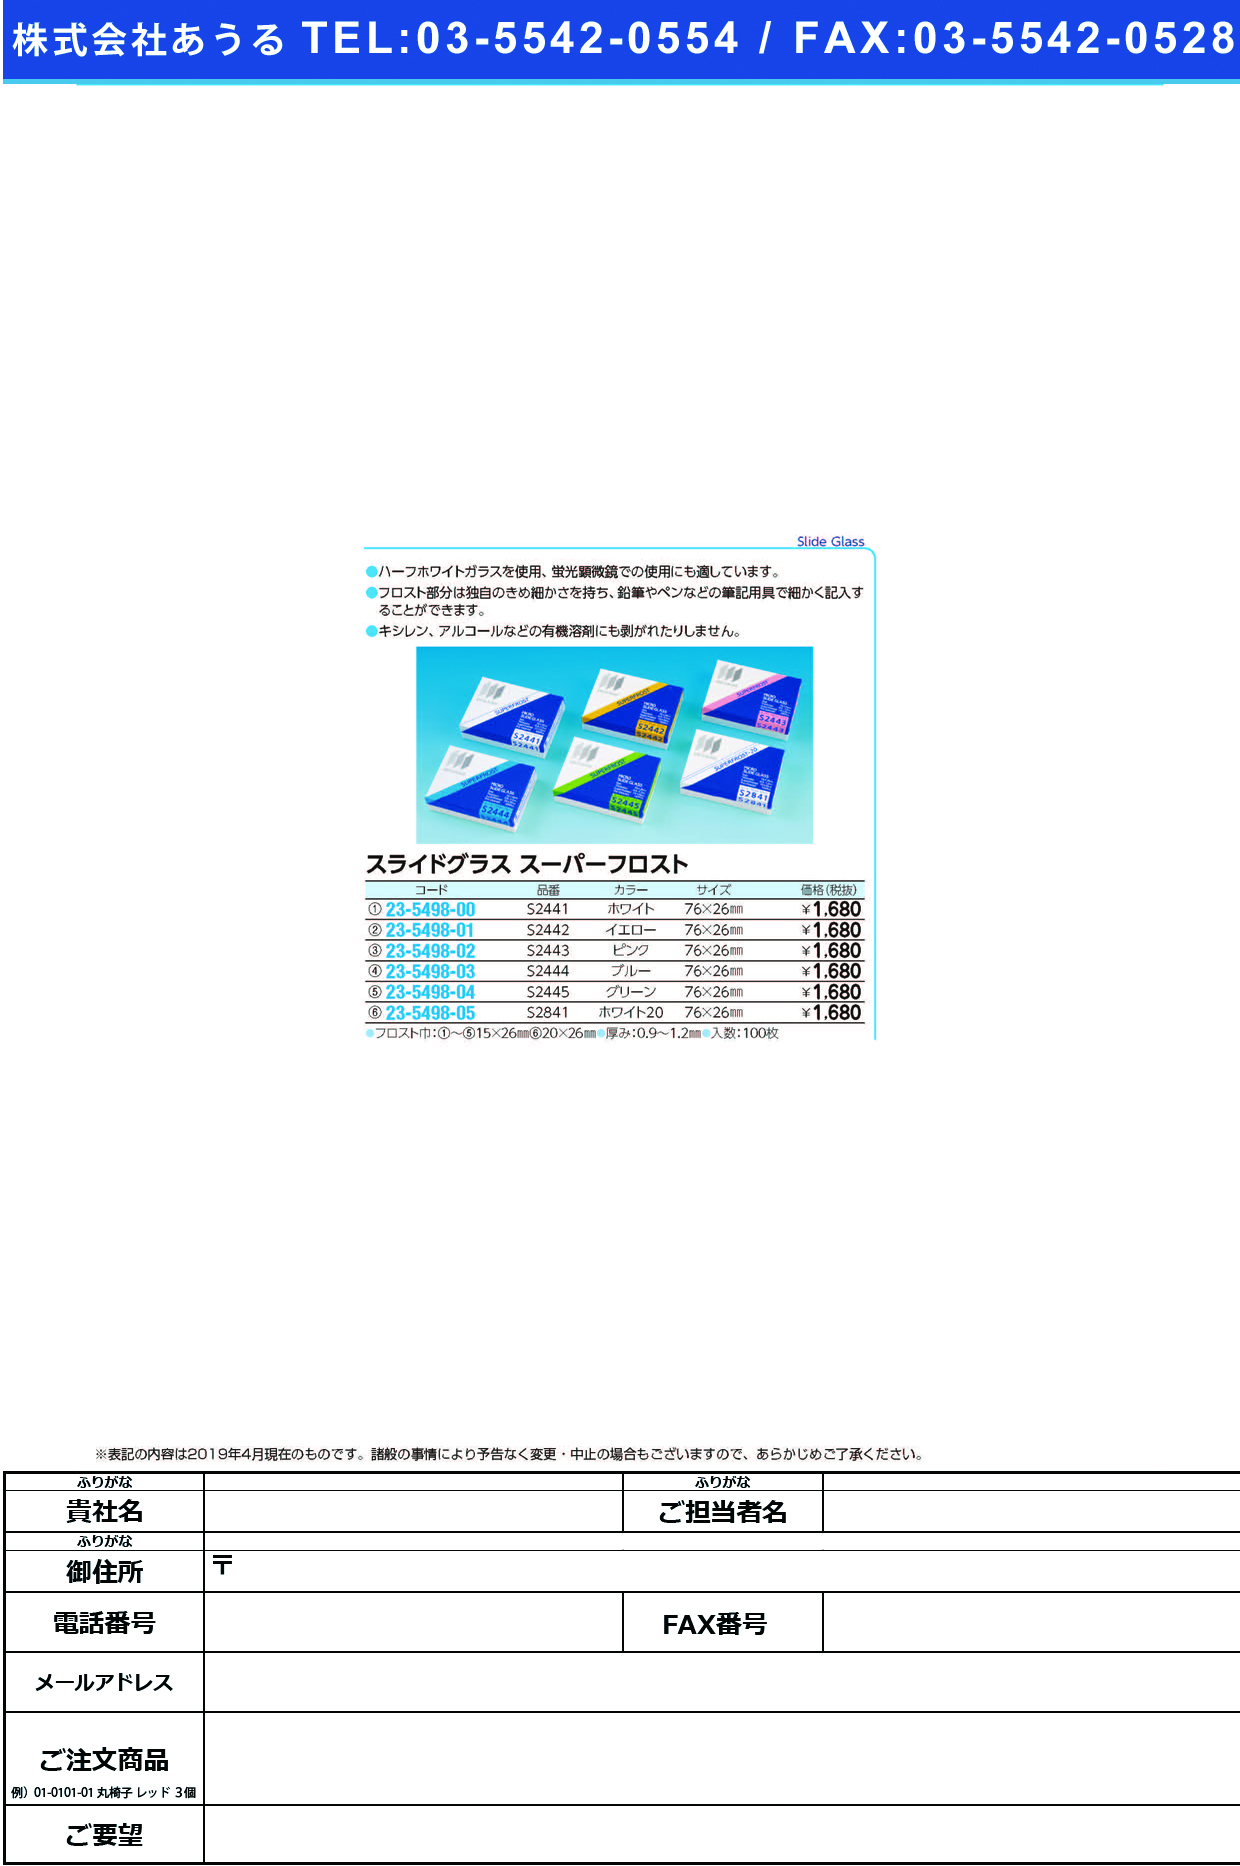 (23-5498-03)松浪スライドグラススーパーフロスト S2444(ﾌﾞﾙｰ)100ﾏｲ ﾏﾂﾅﾐｽﾗｲﾄﾞｸﾞﾗｽｽｰﾊﾟｰﾌﾛ【1箱単位】【2019年カタログ商品】